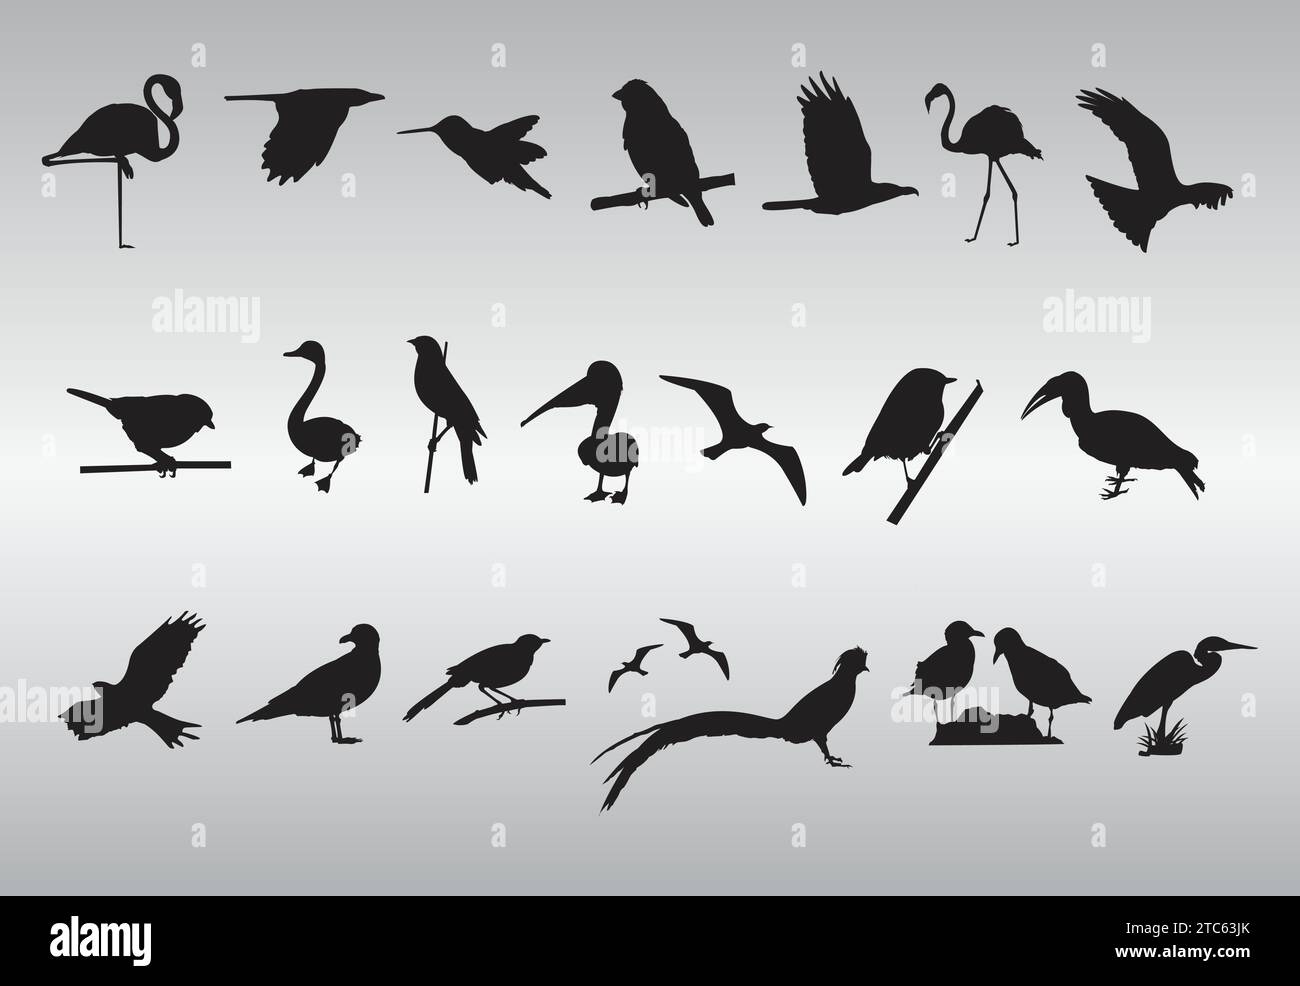 Free Vector Bird Silhouettes Collection Stock Vector